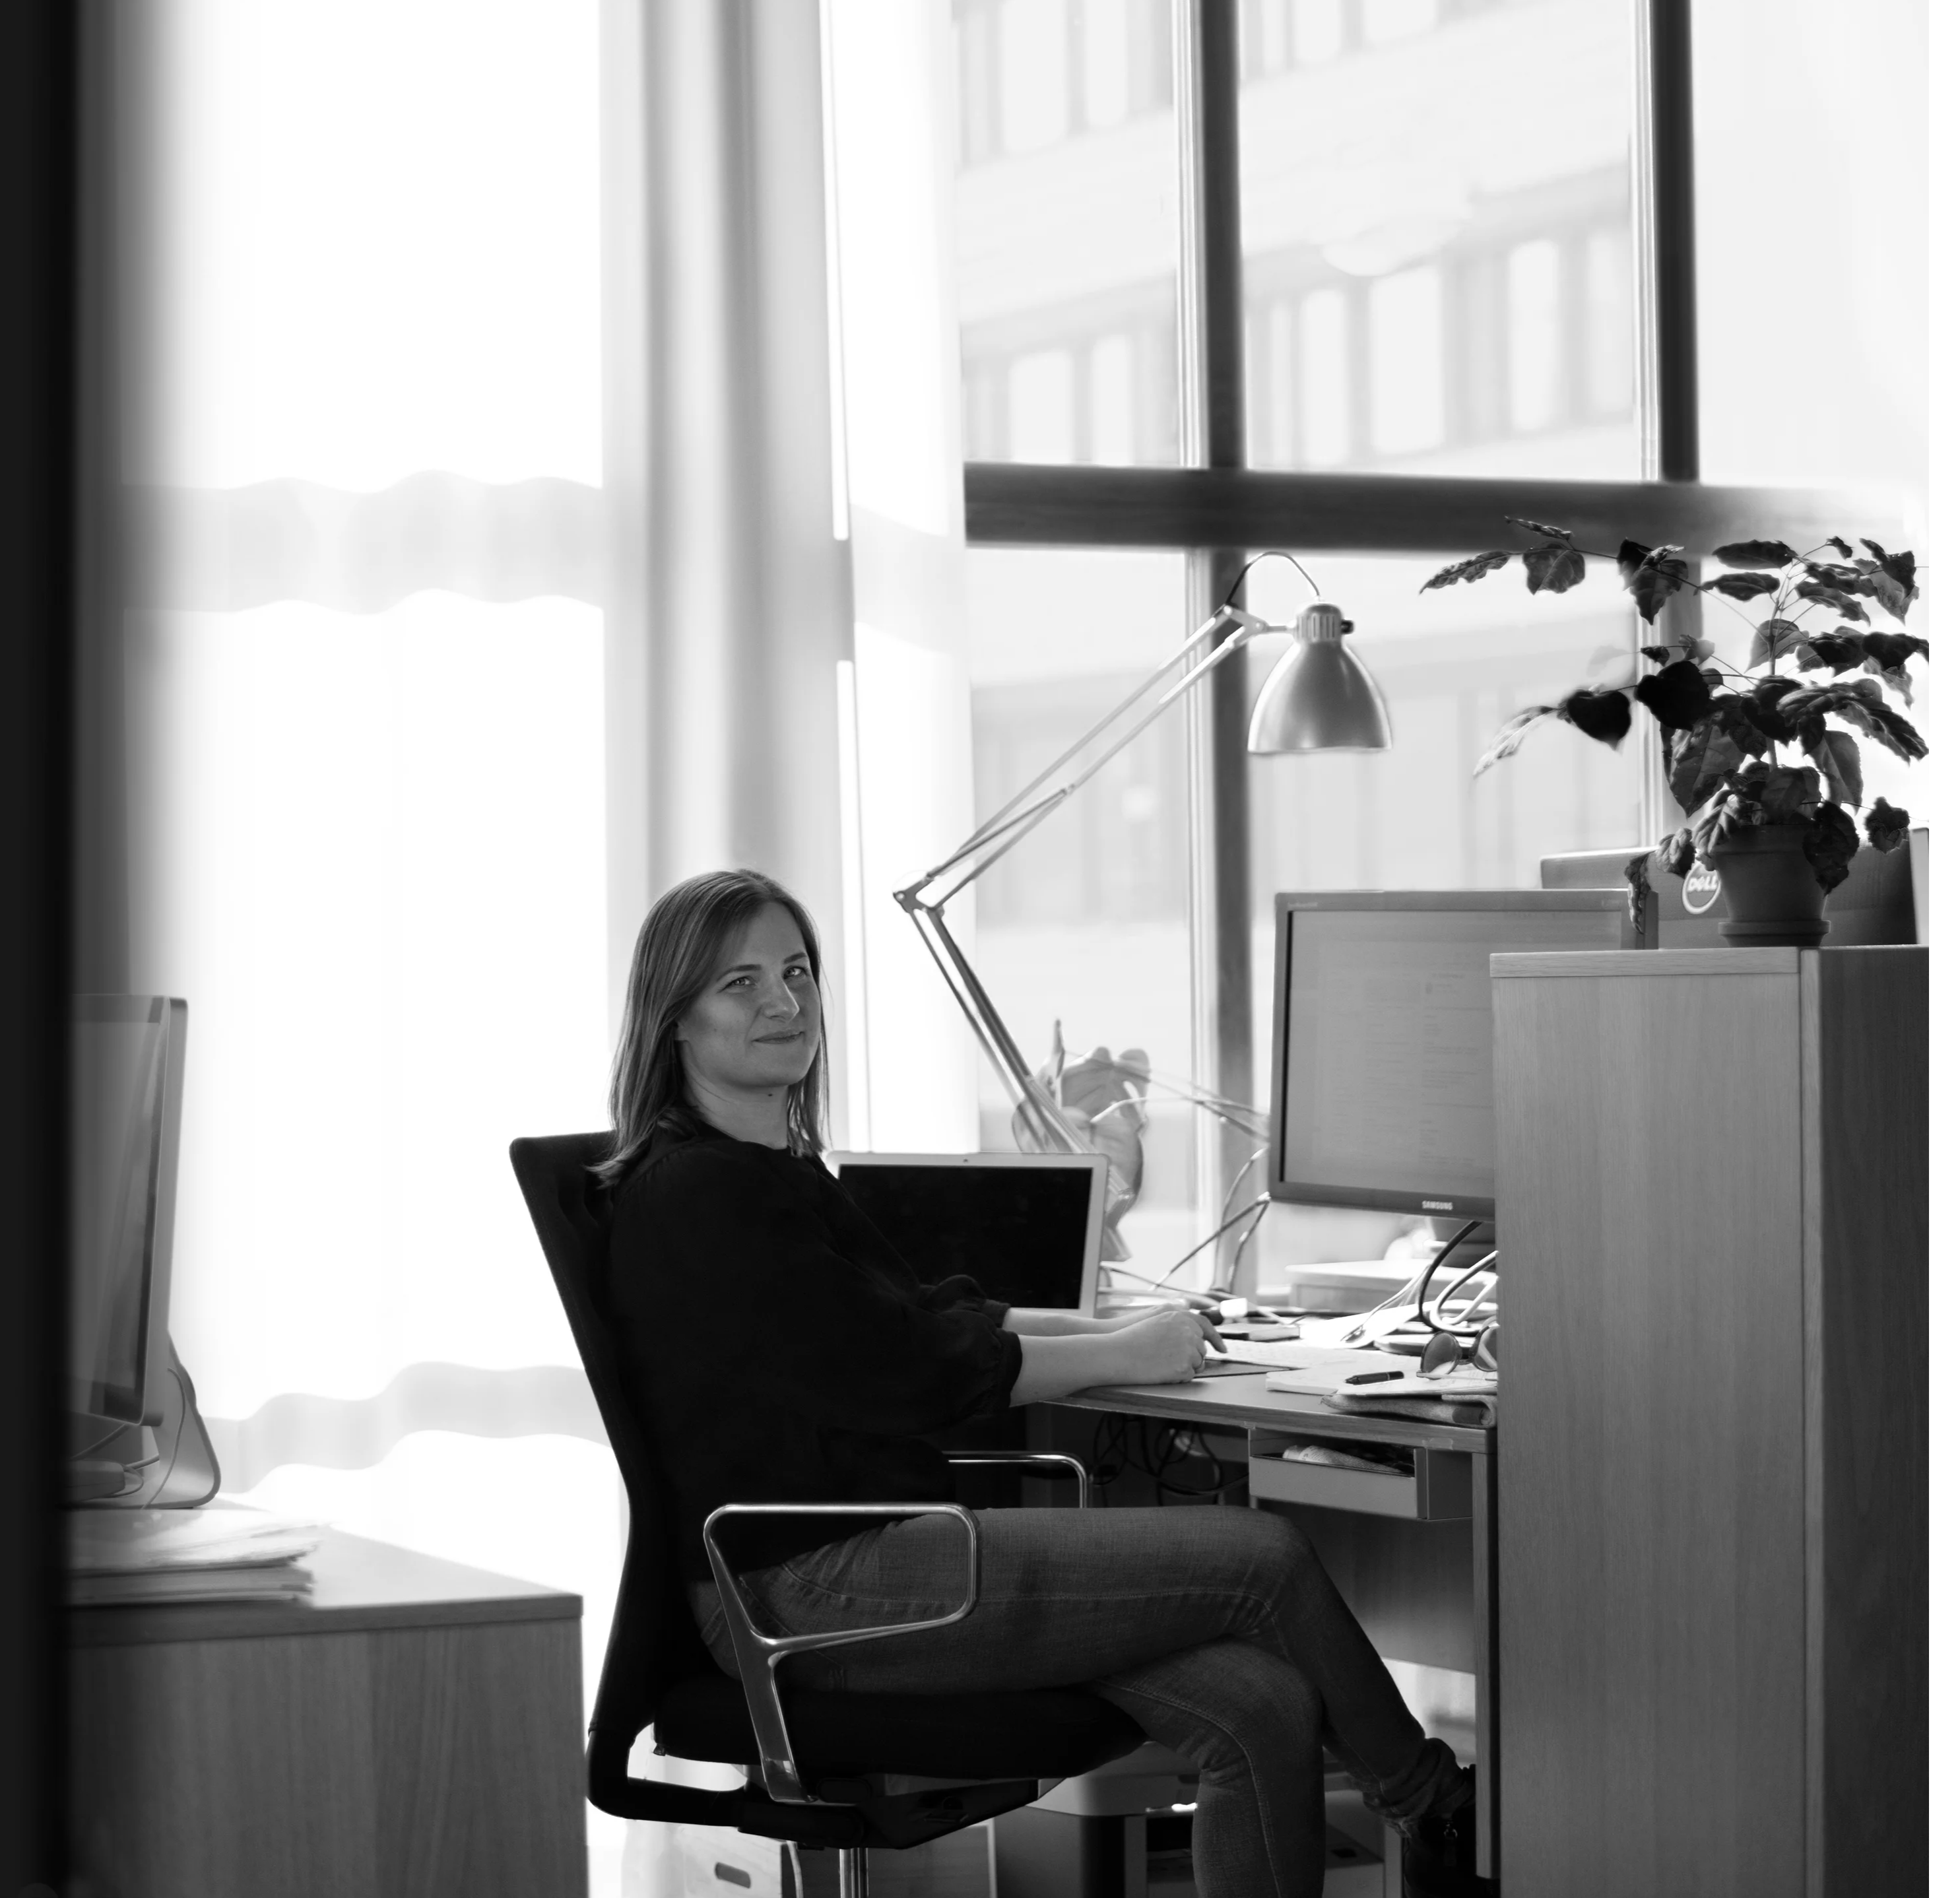 Svartvit bild, kvinna sitter till vänster om hennes skrivbord, höger axel mot kameran, huvudet vändt mot kameran hon ler. Händerna på skrivbordet framför dator, sidleds till datorn en bordslampa. Bakgrunden stort fönster med genomskinliga gardiner. 